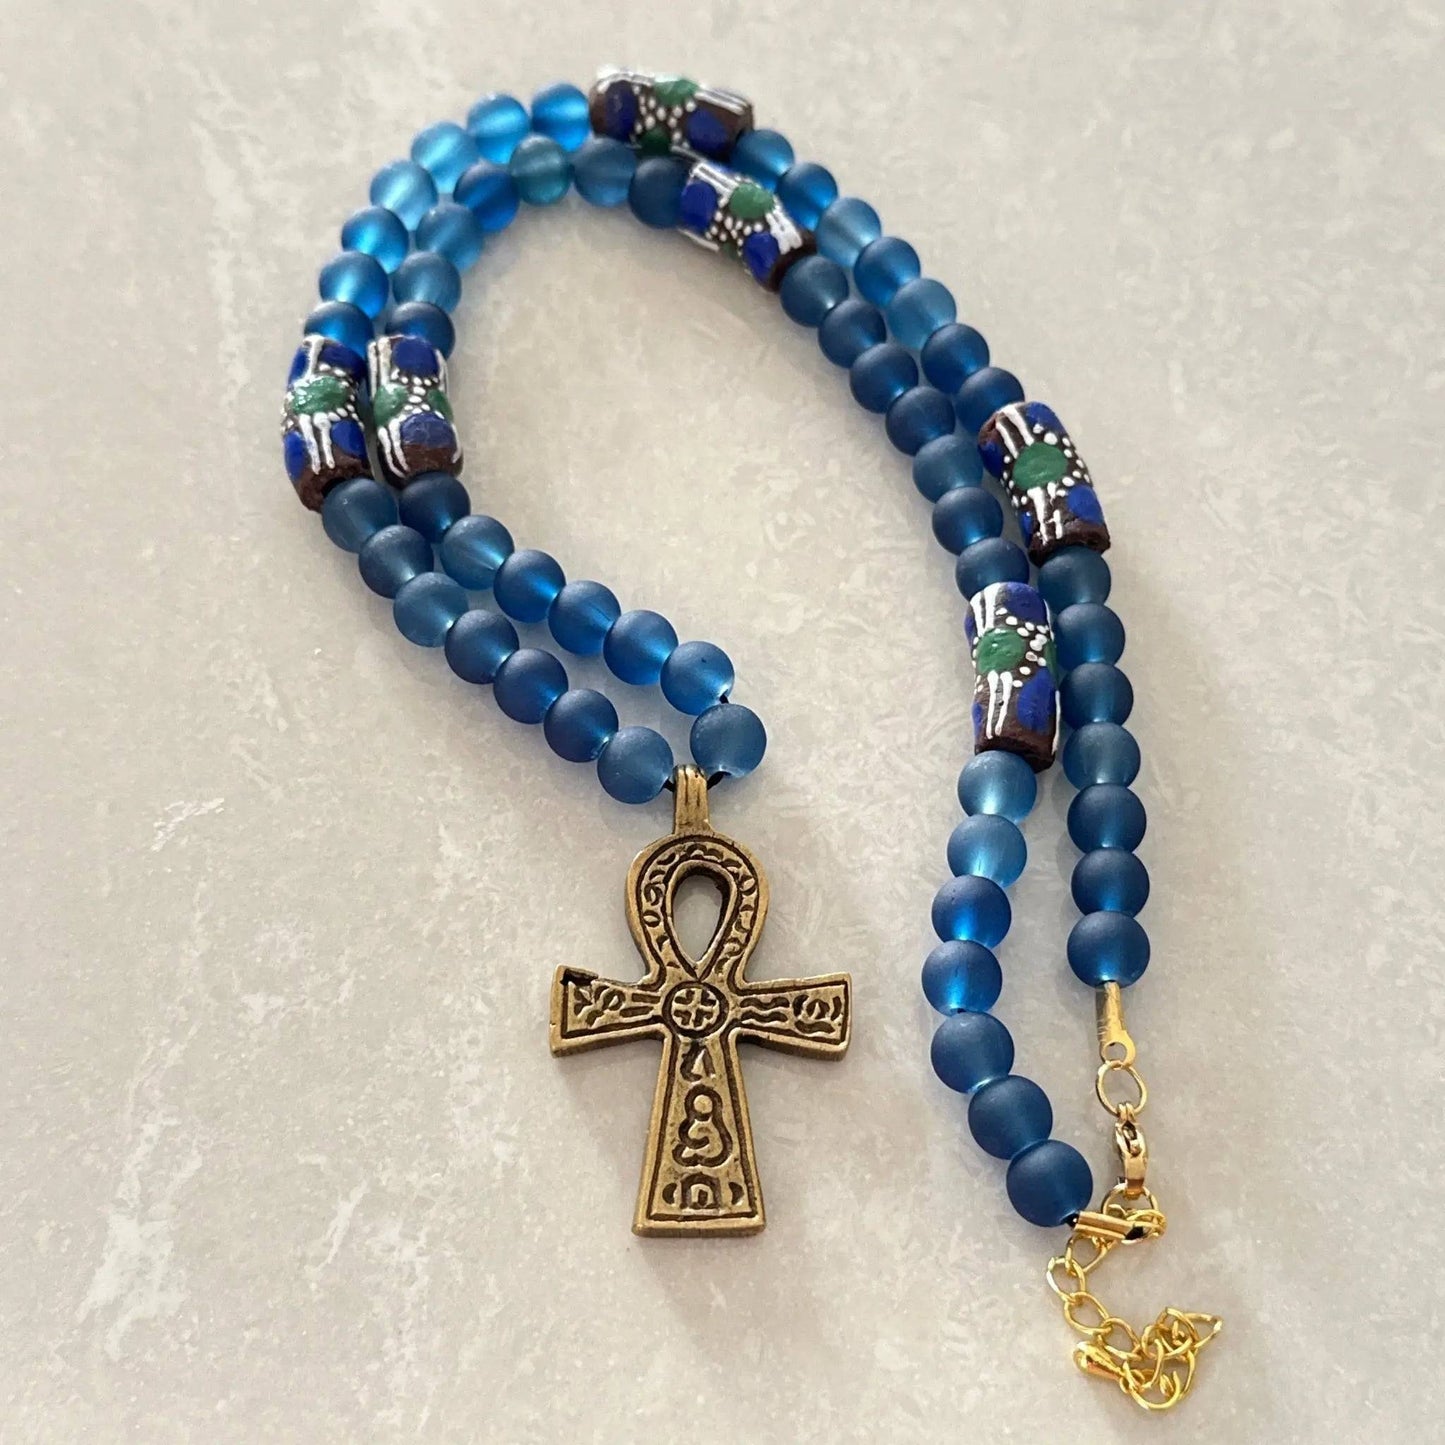 Ankh "Key of Life" Necklace - Uplift Beads